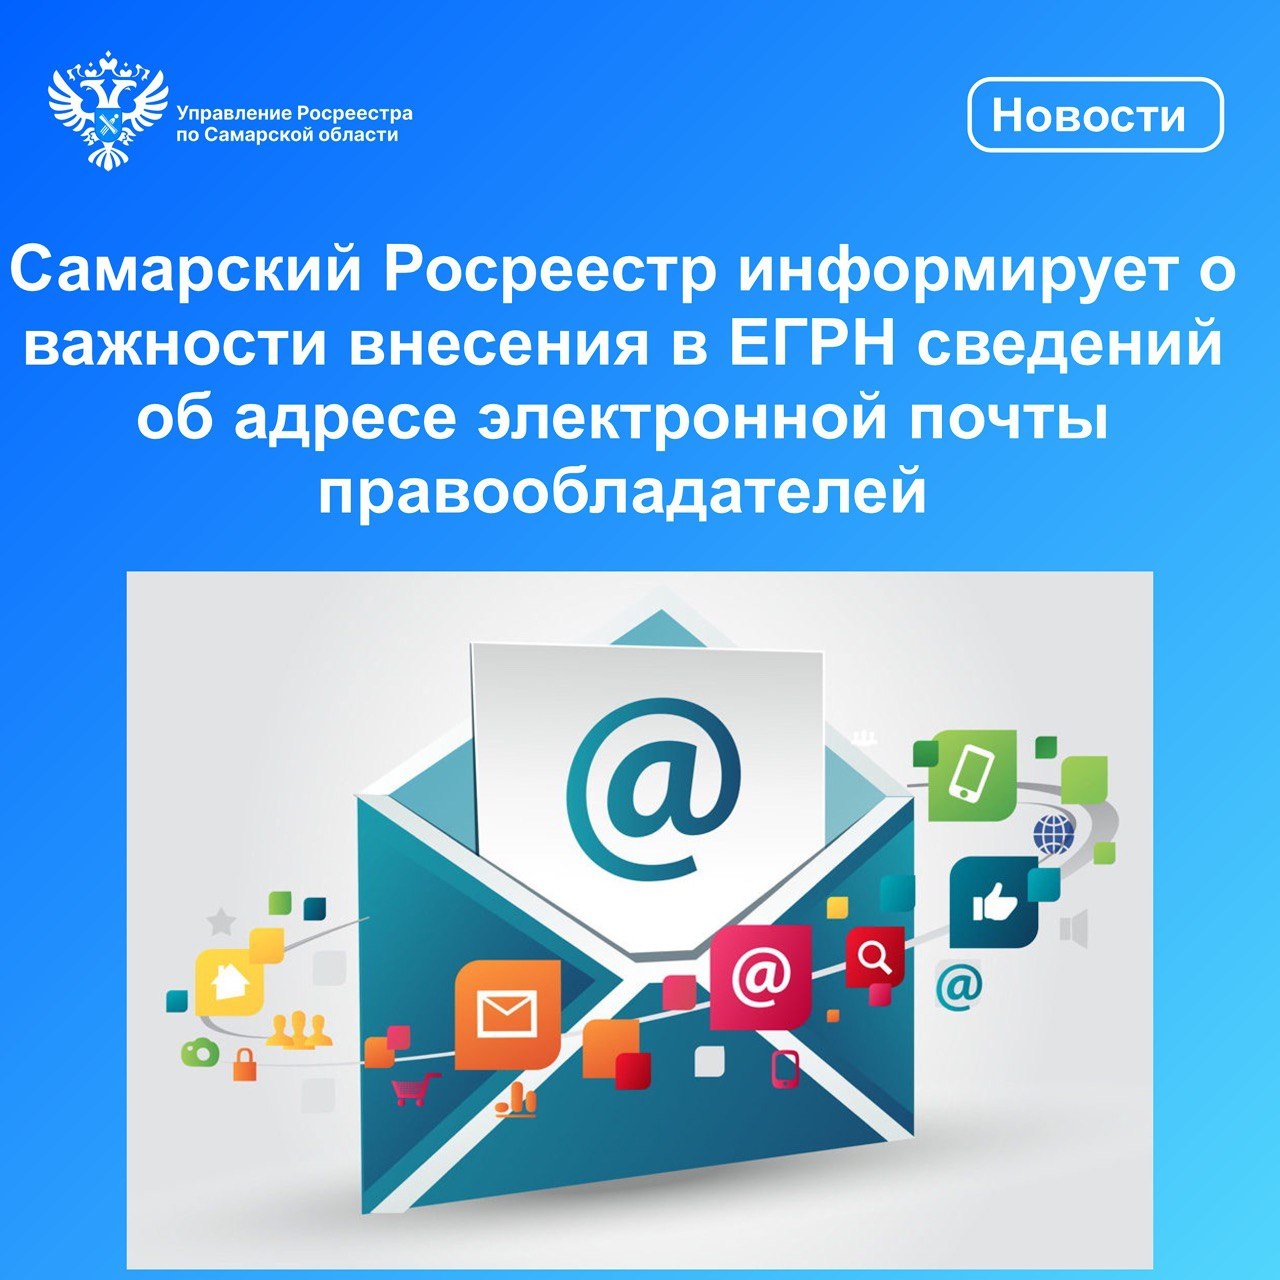 Самарский Росреестр информирует о важности внесения в ЕГРН сведений об адресе электронной почты правообладателей